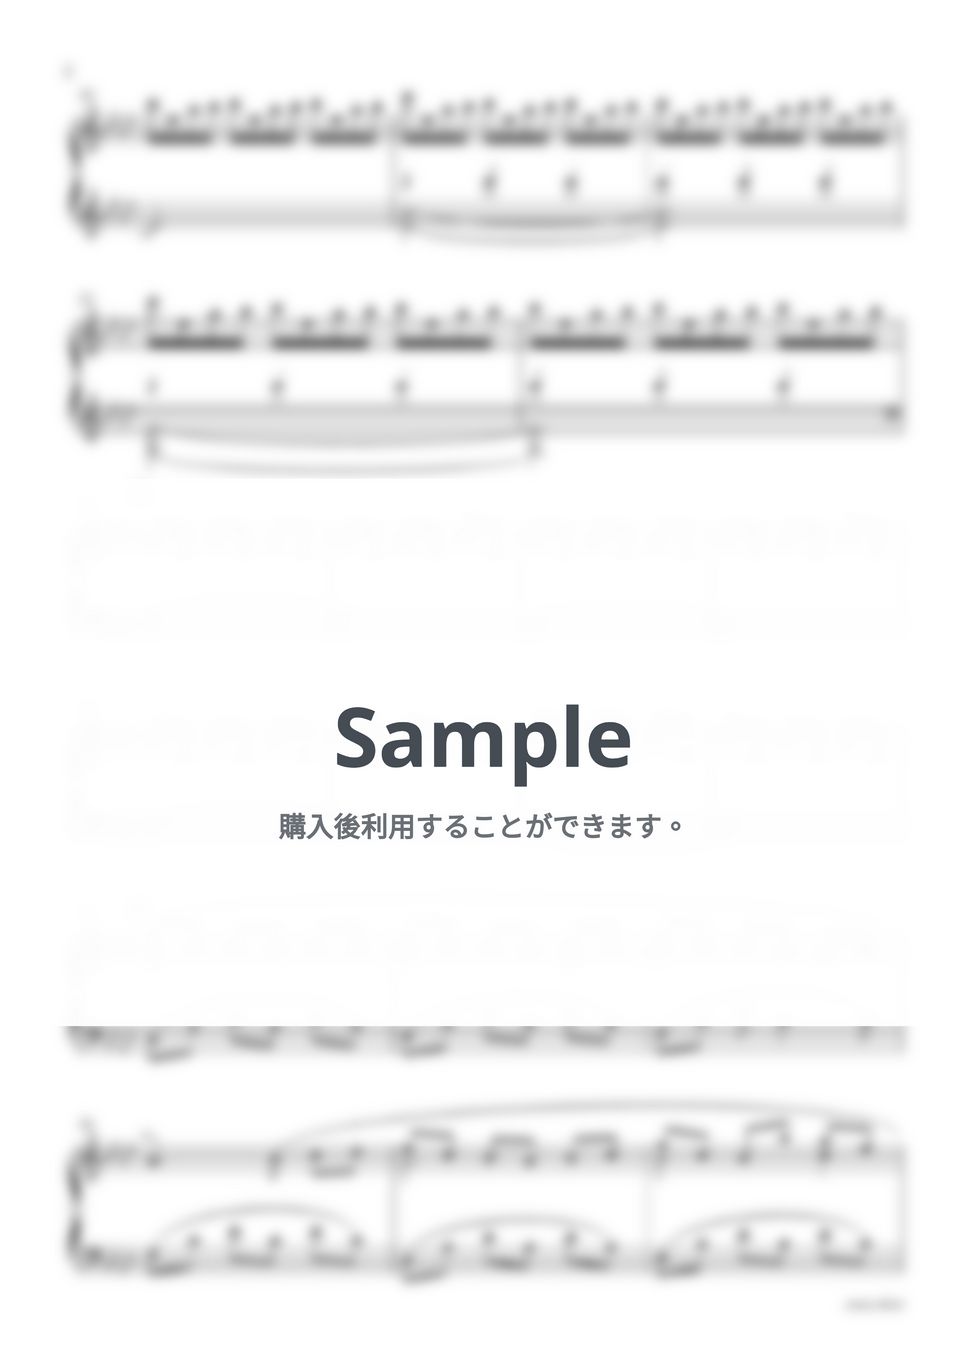 ドラマ『最愛』OST - Familiar Arms by sammy